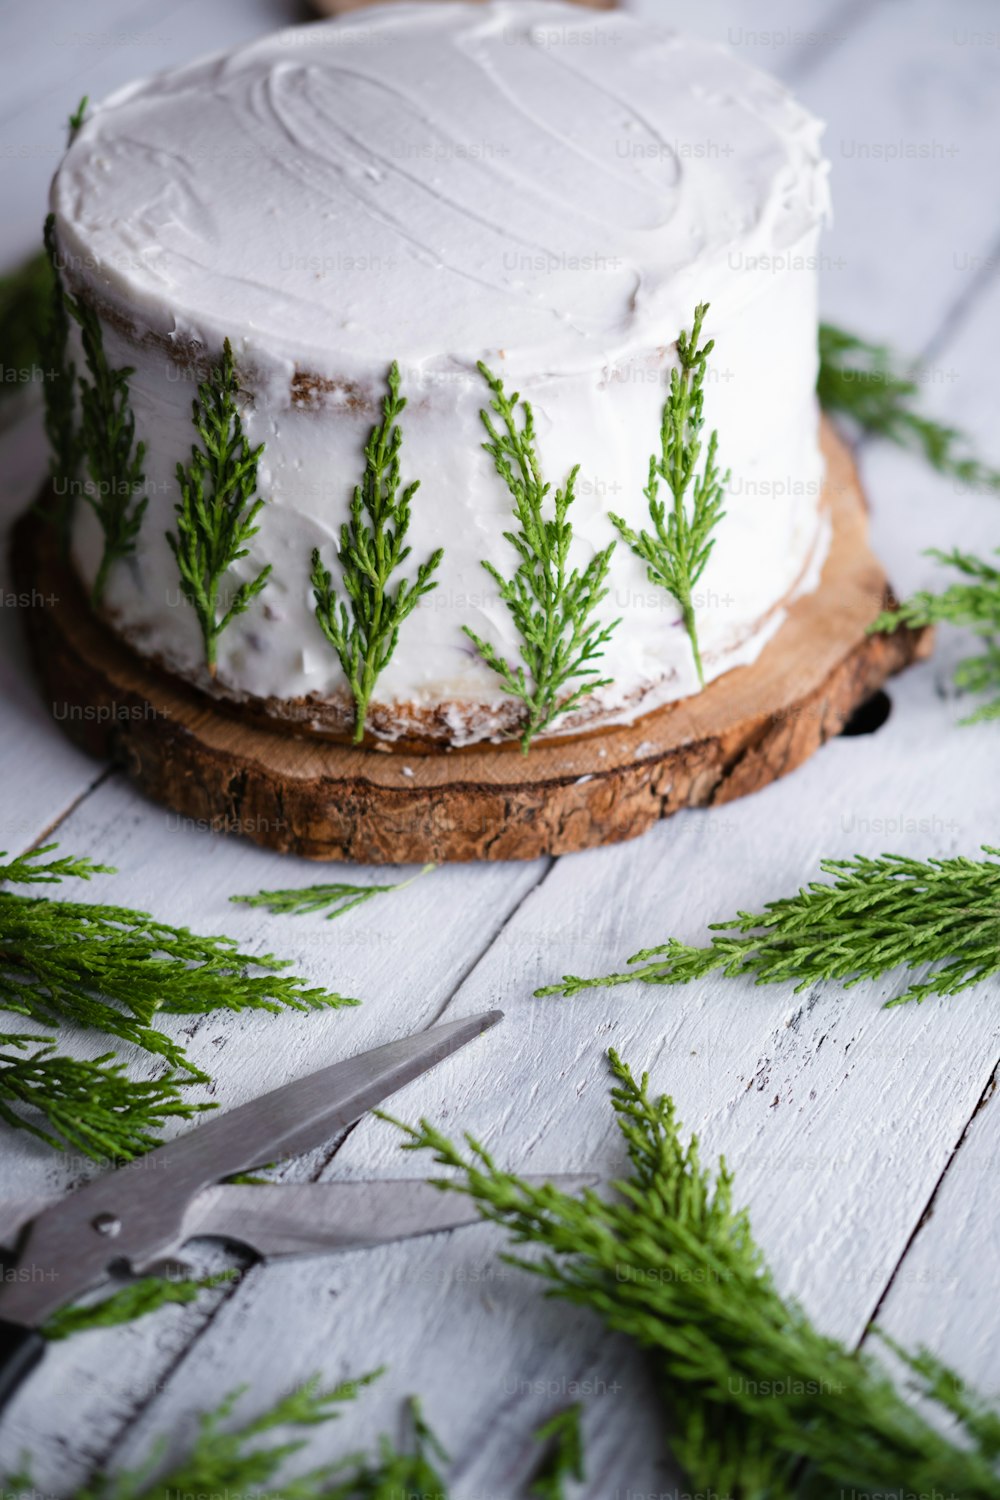 Un pastel con glaseado blanco y ramitas verdes